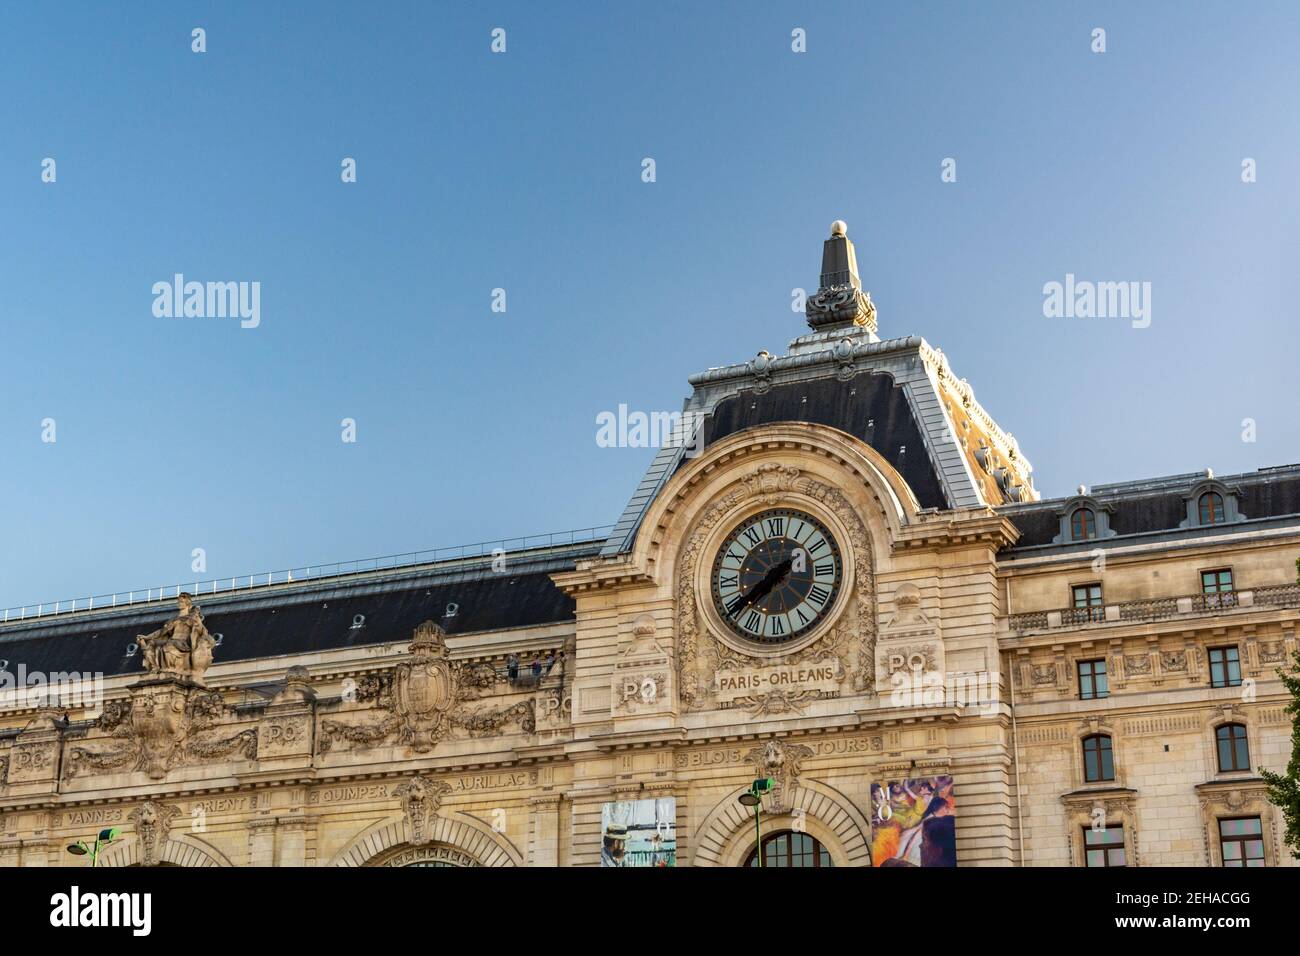 Paris, France - 29 août 2019 : Musée d'Orsay sur la rive de la Seine. Il se trouve dans l'ancienne gare d'Orsay, un chemin de fer des Beaux-Arts Banque D'Images